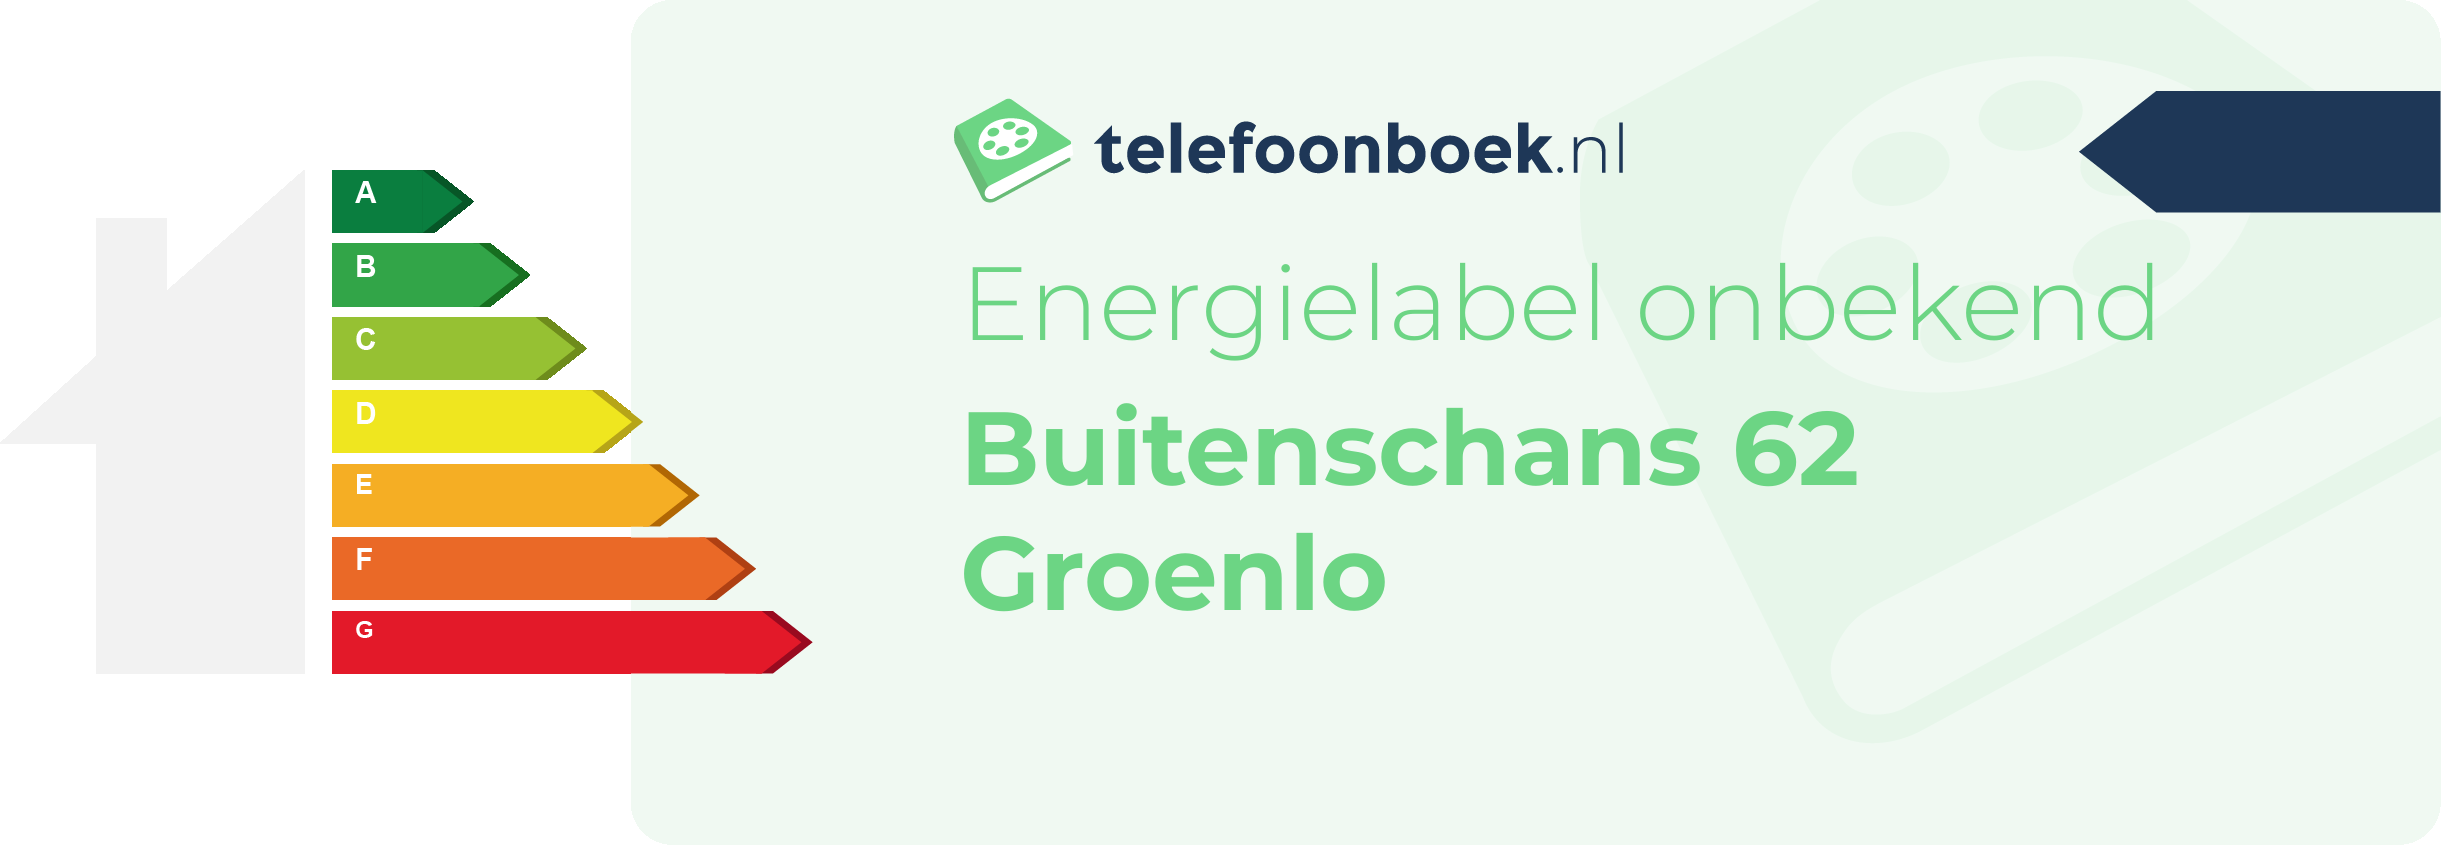 Energielabel Buitenschans 62 Groenlo